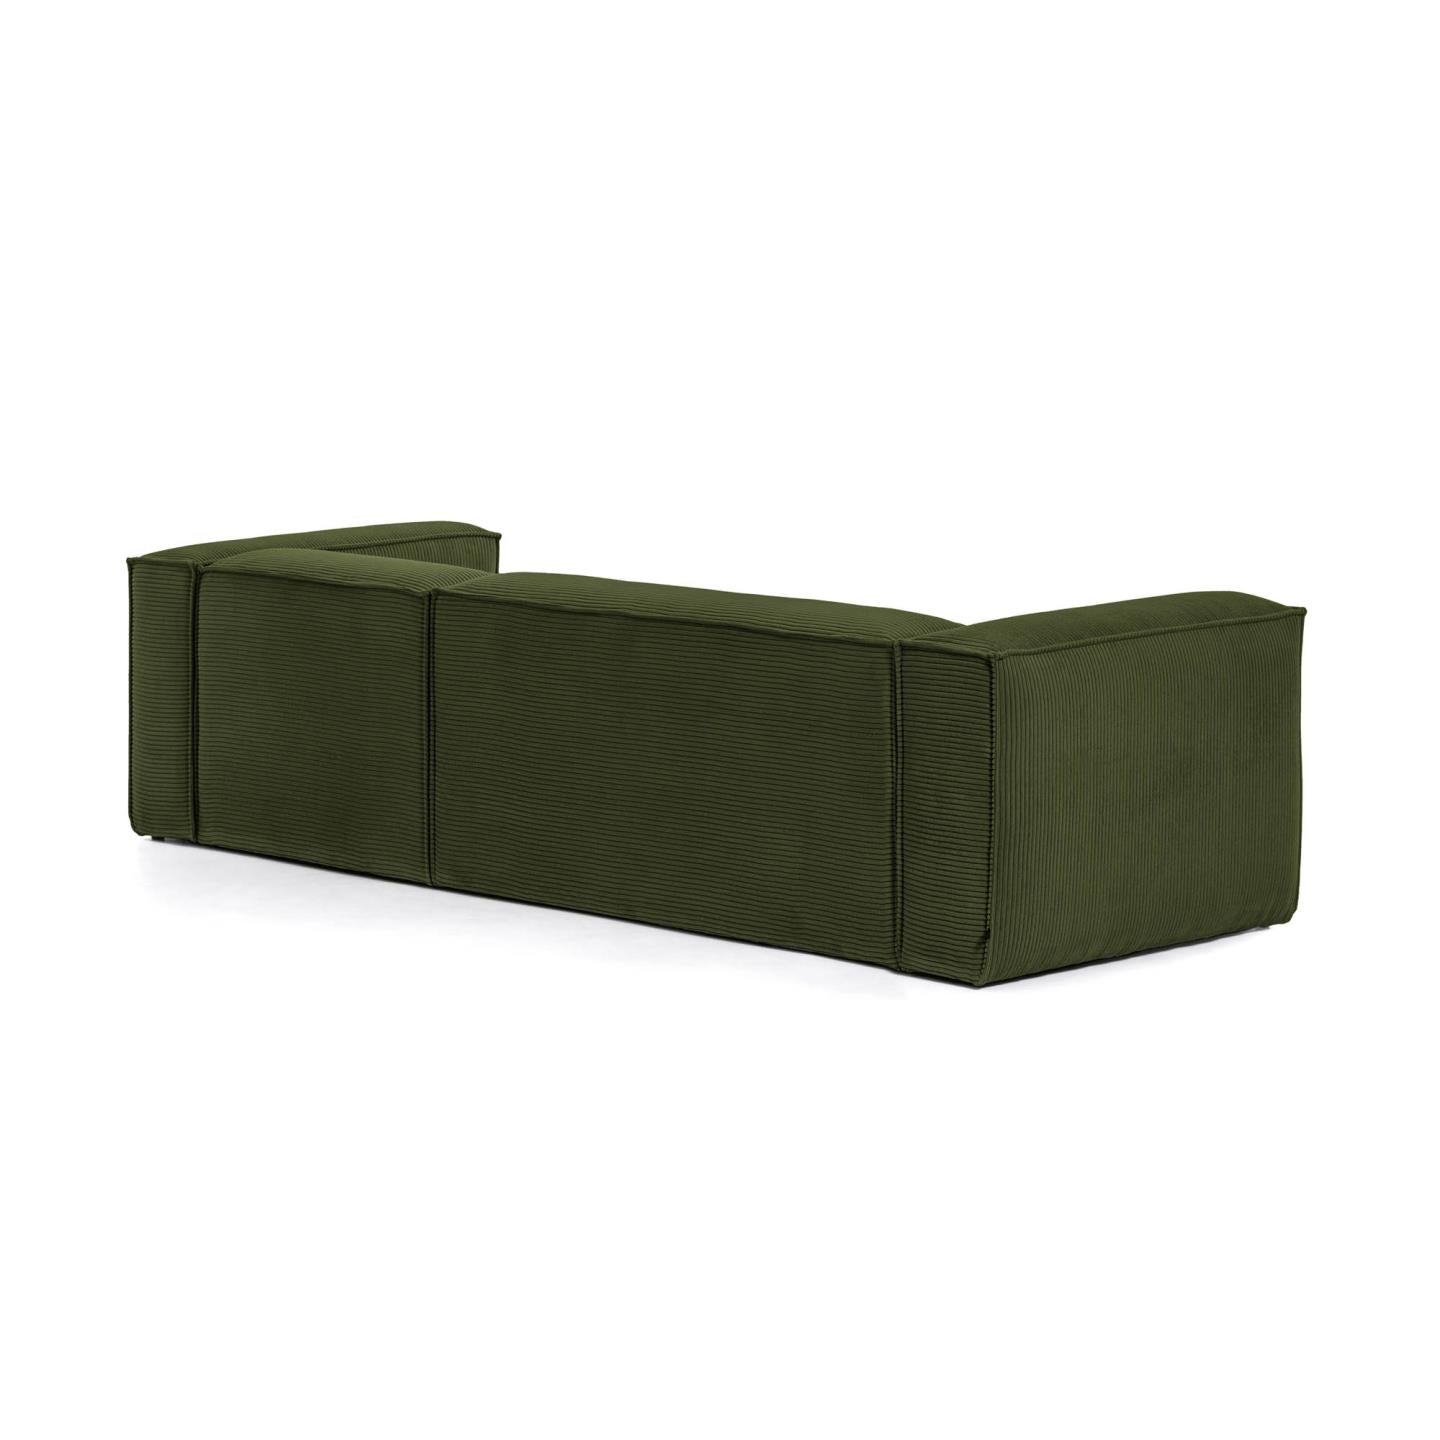 Blok 3 személyes kanapé jobb oldali fekvőfotellel, zöld széles varrású kordbársonyból, 300 cm